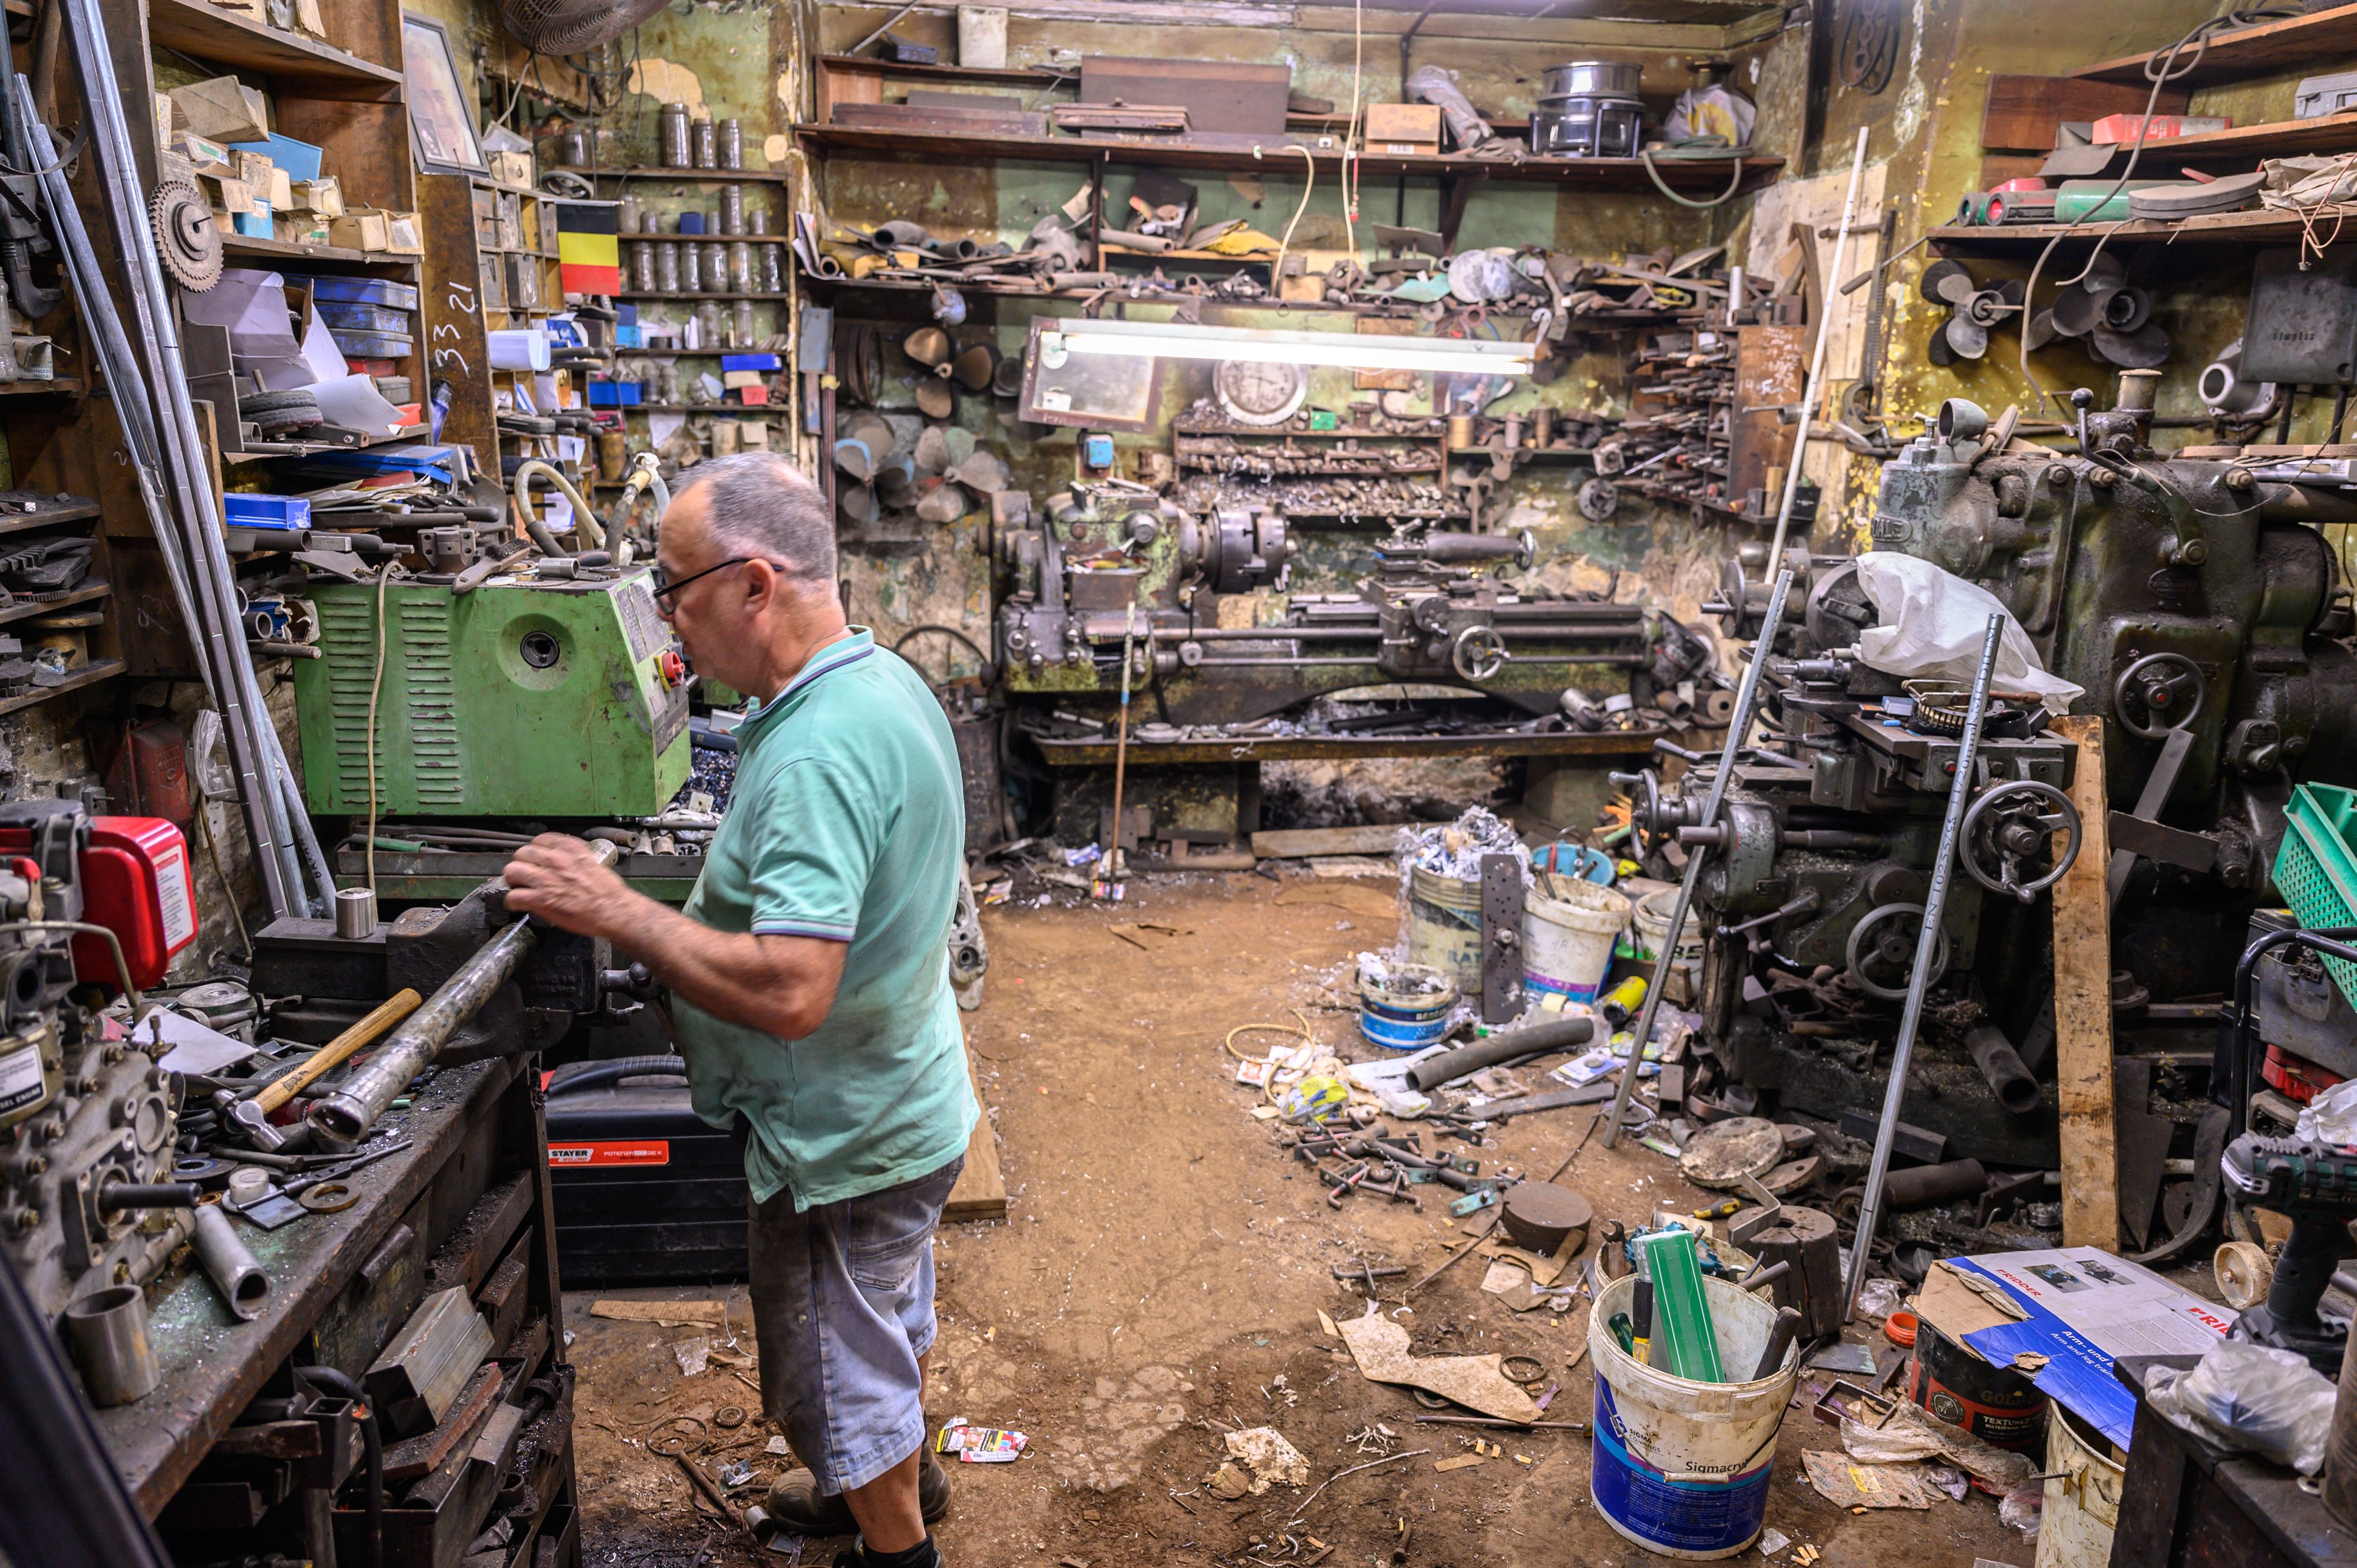 Man in family machine shop Valletta Malta